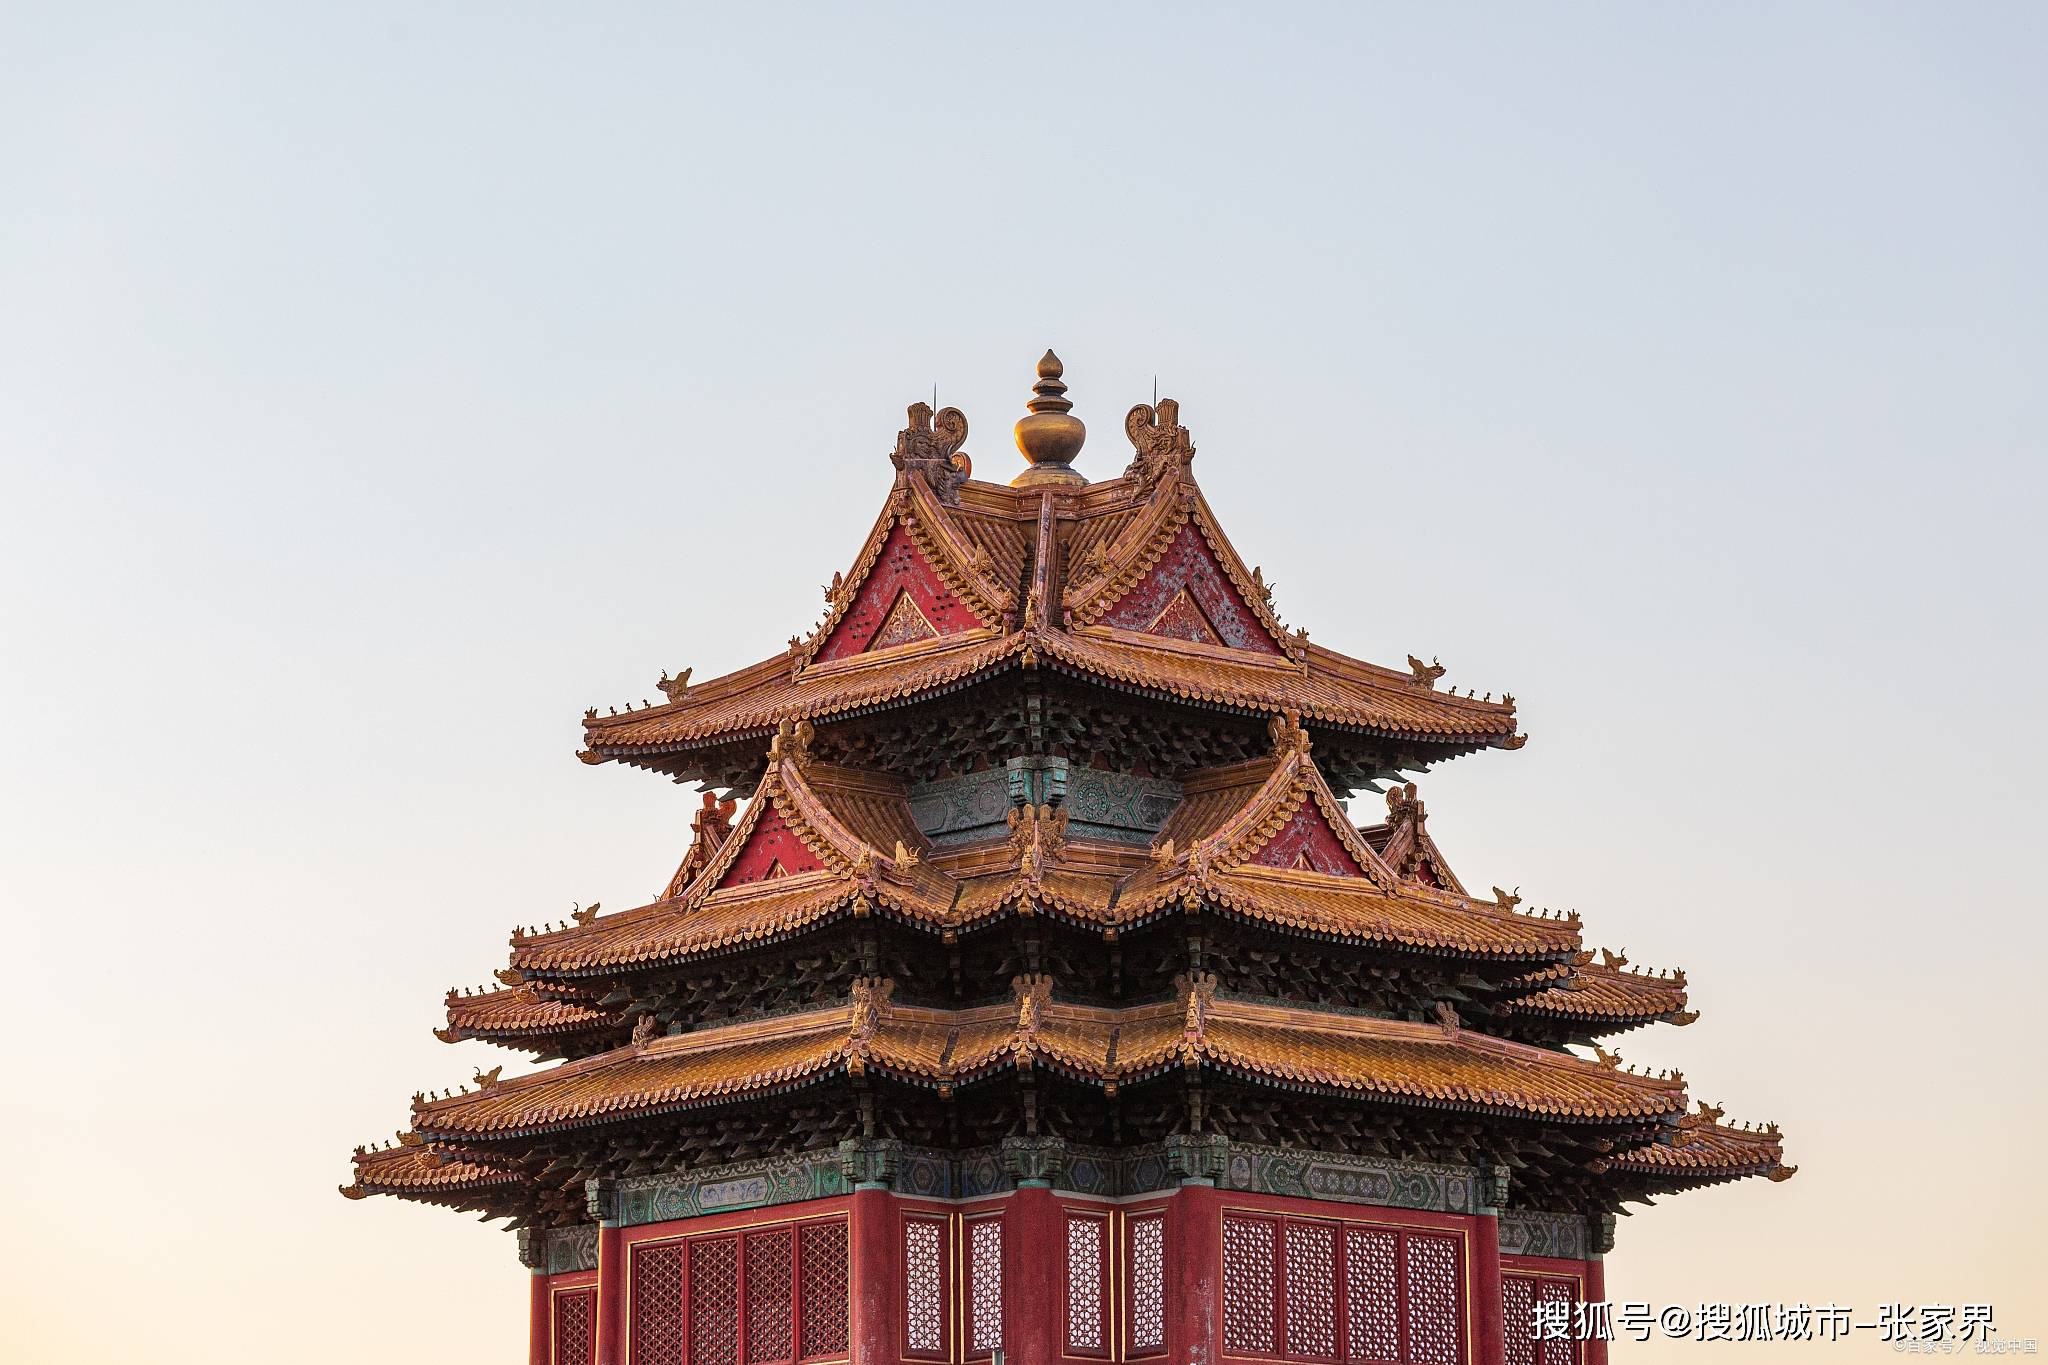 北京报团五日游攻略和景点分享,去北京故宫旅行一趟要